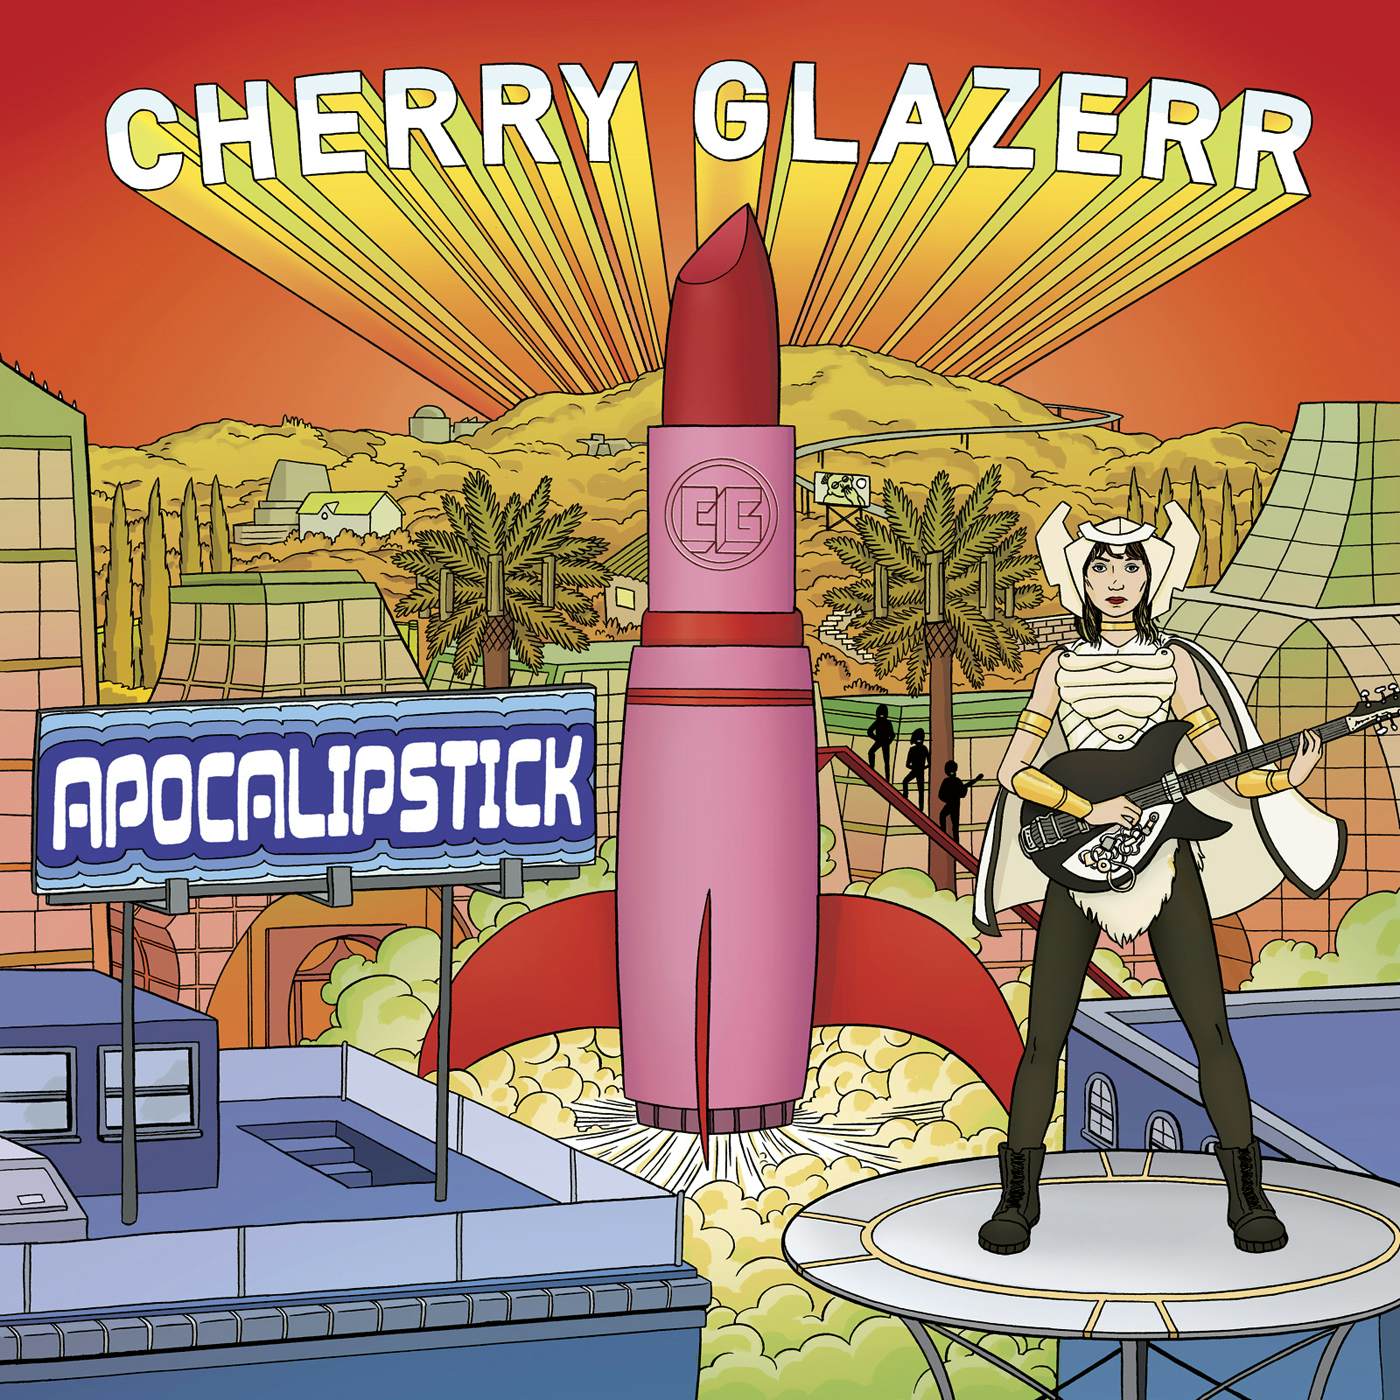 Cherry Glazerr Apocalipstick Vinyl Record